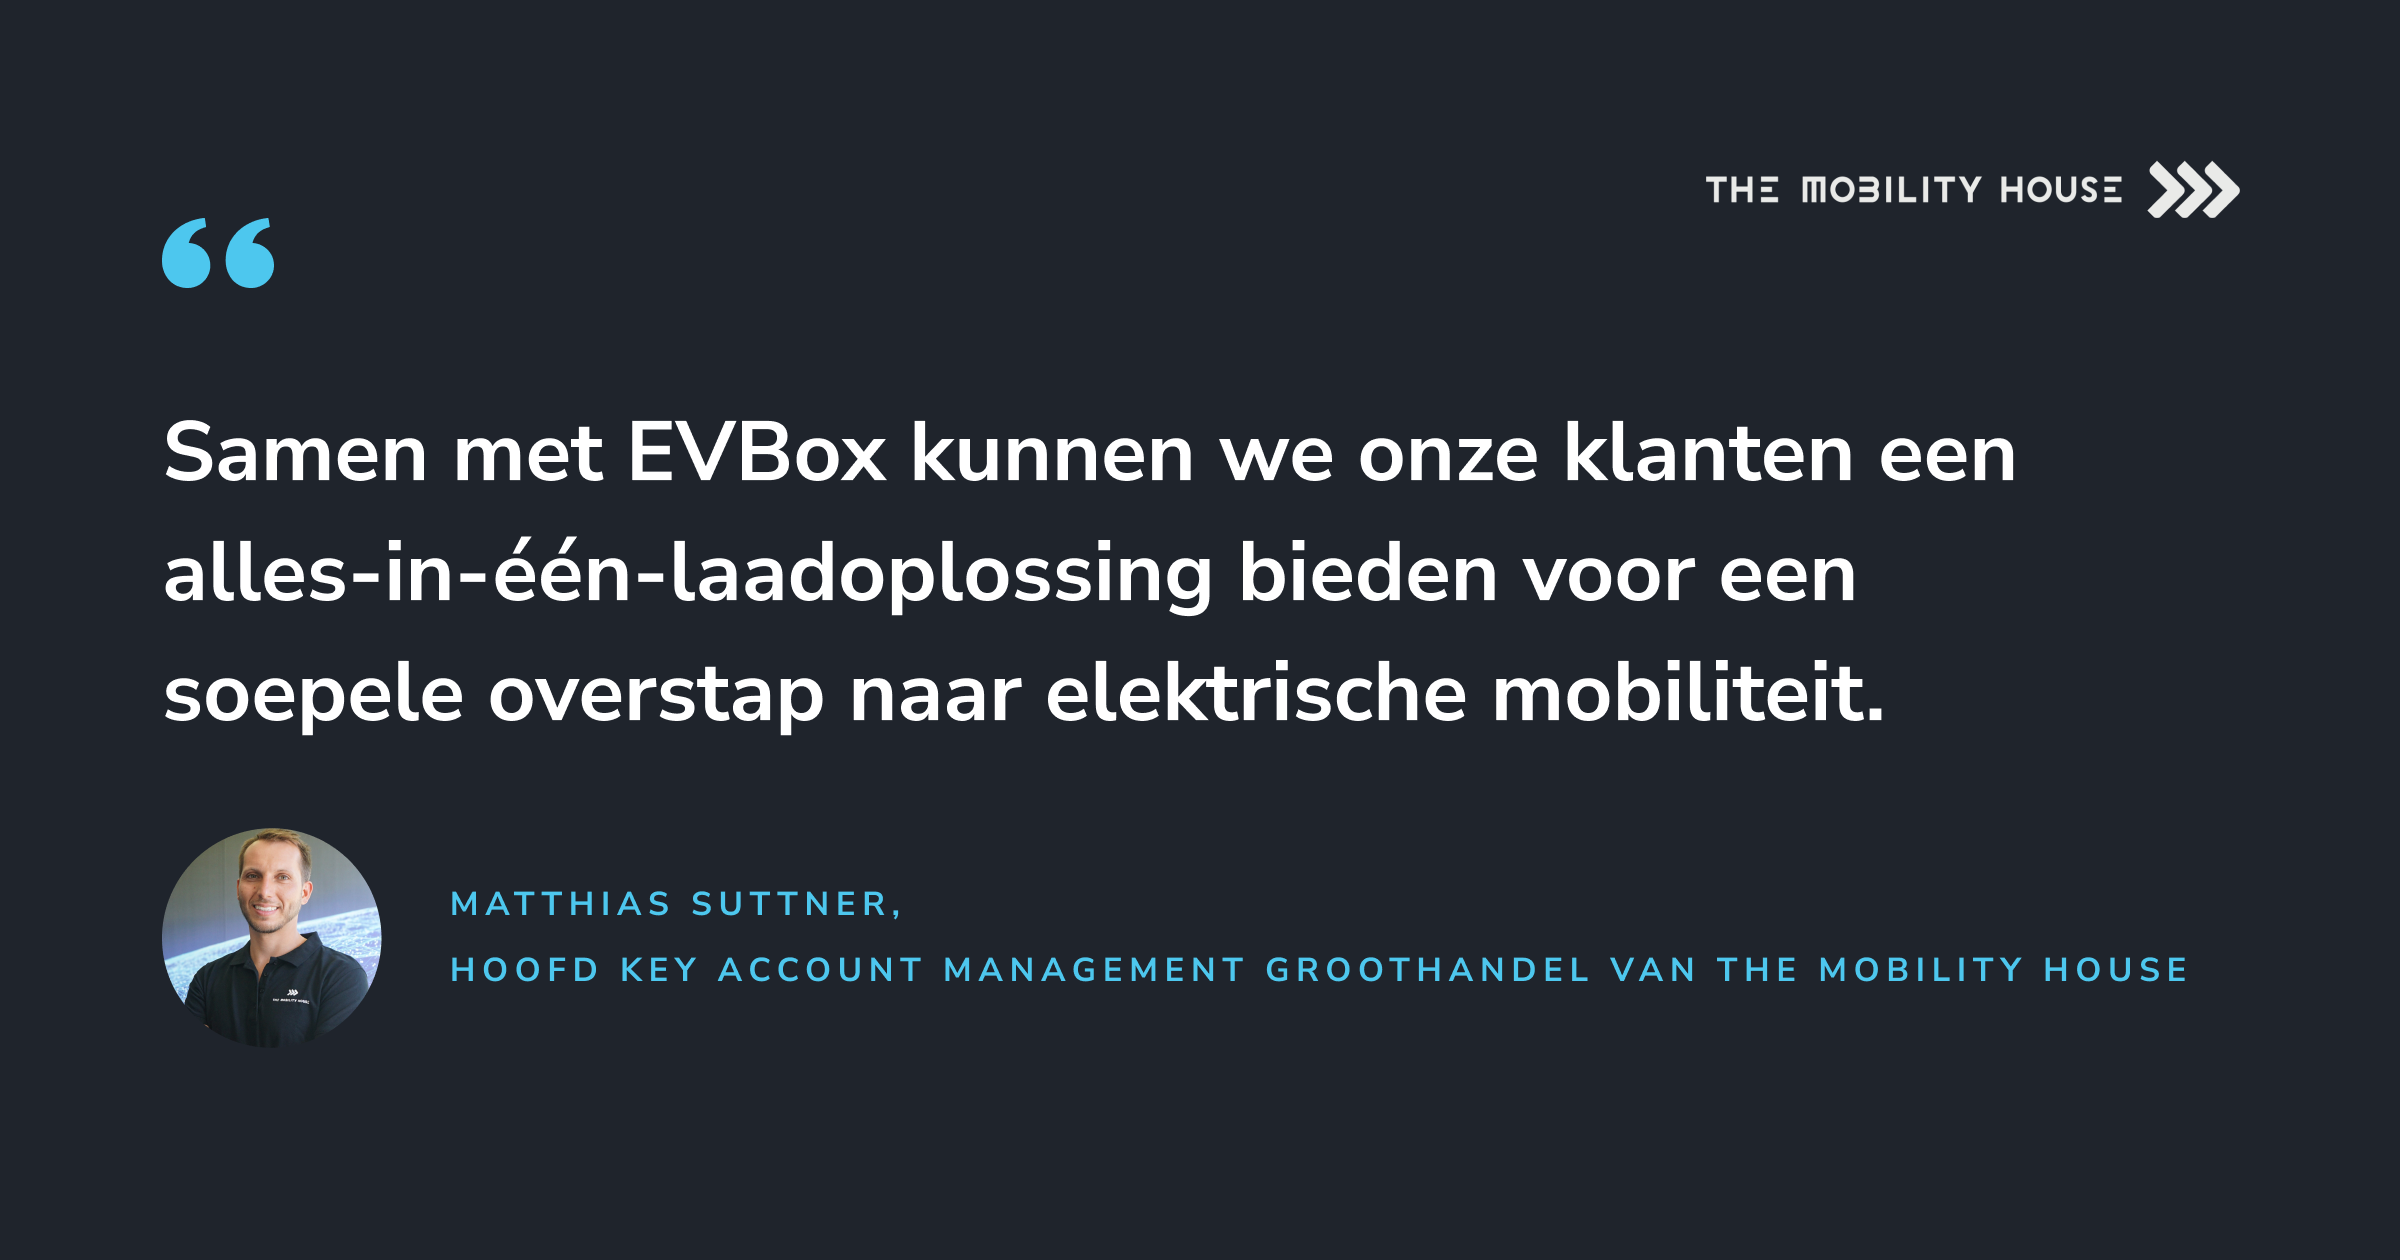 Een citaat van Matthias Suttner, Hoofd Key Account Management Groothandel van The Mobility House. “Samen met EVBox kunnen we onze klanten een alles-in-één-laadoplossing bieden voor een soepele overstap naar elektrische mobiliteit.”